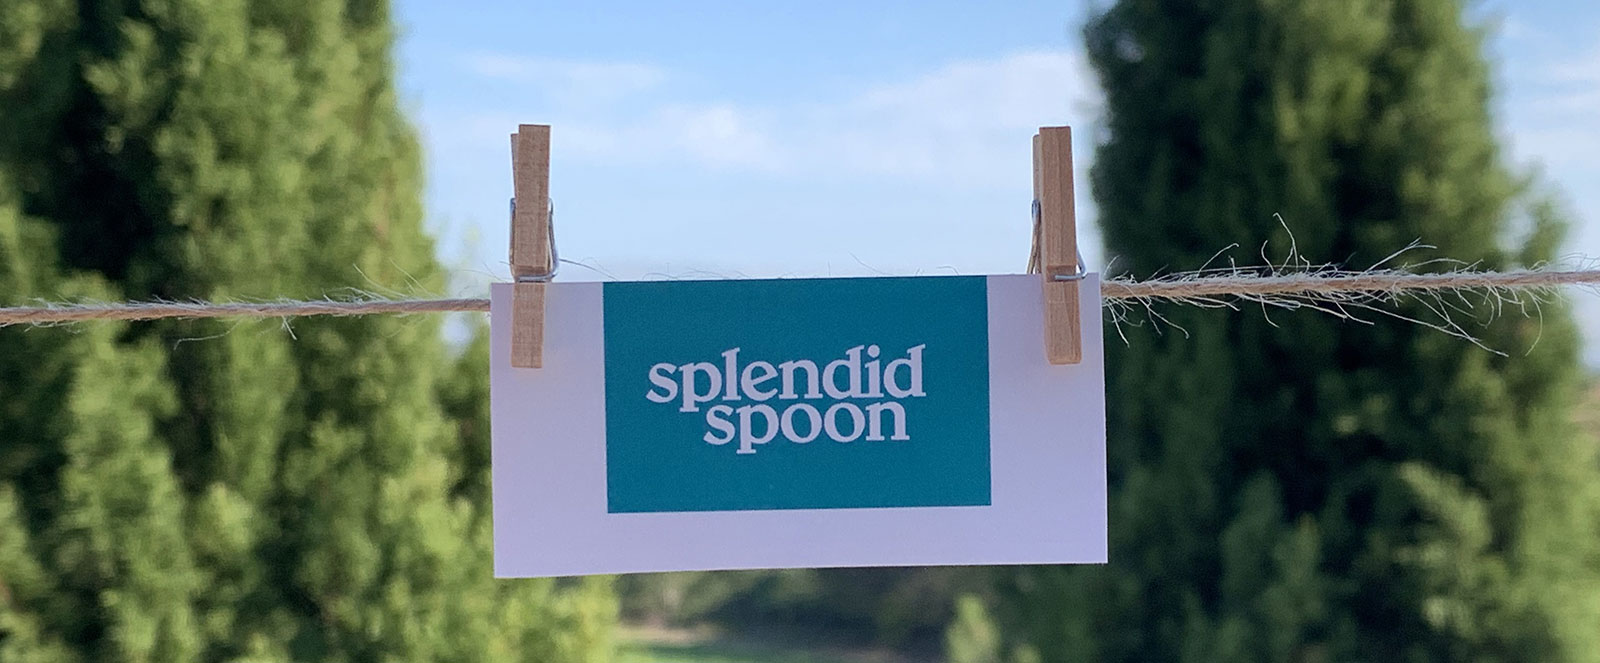 Splendid Spoon Promotion Offers